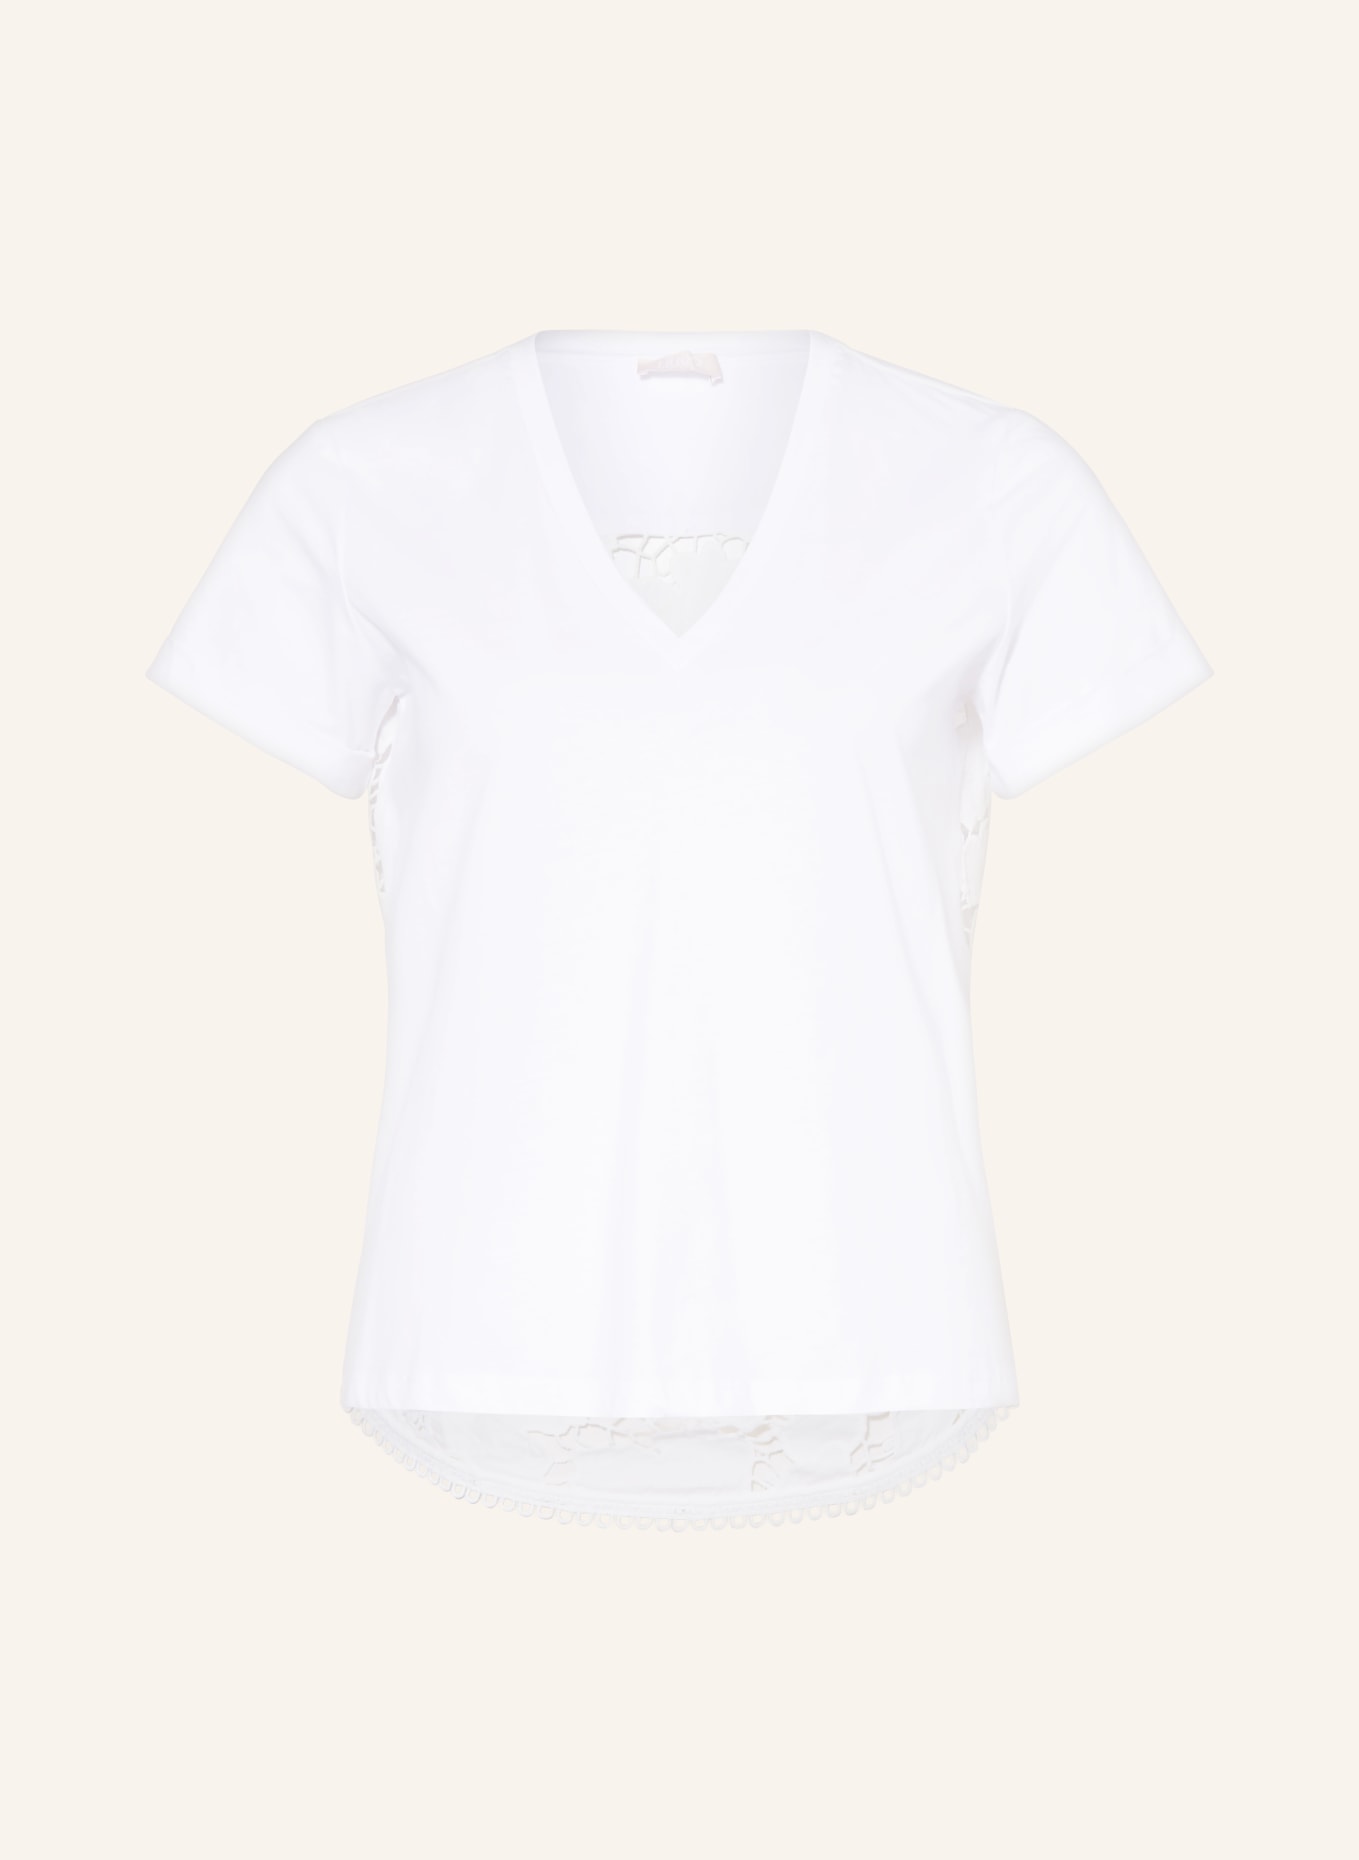 LIU JO T-Shirt im Materialmix mit Spitze, Farbe: WEISS (Bild 1)